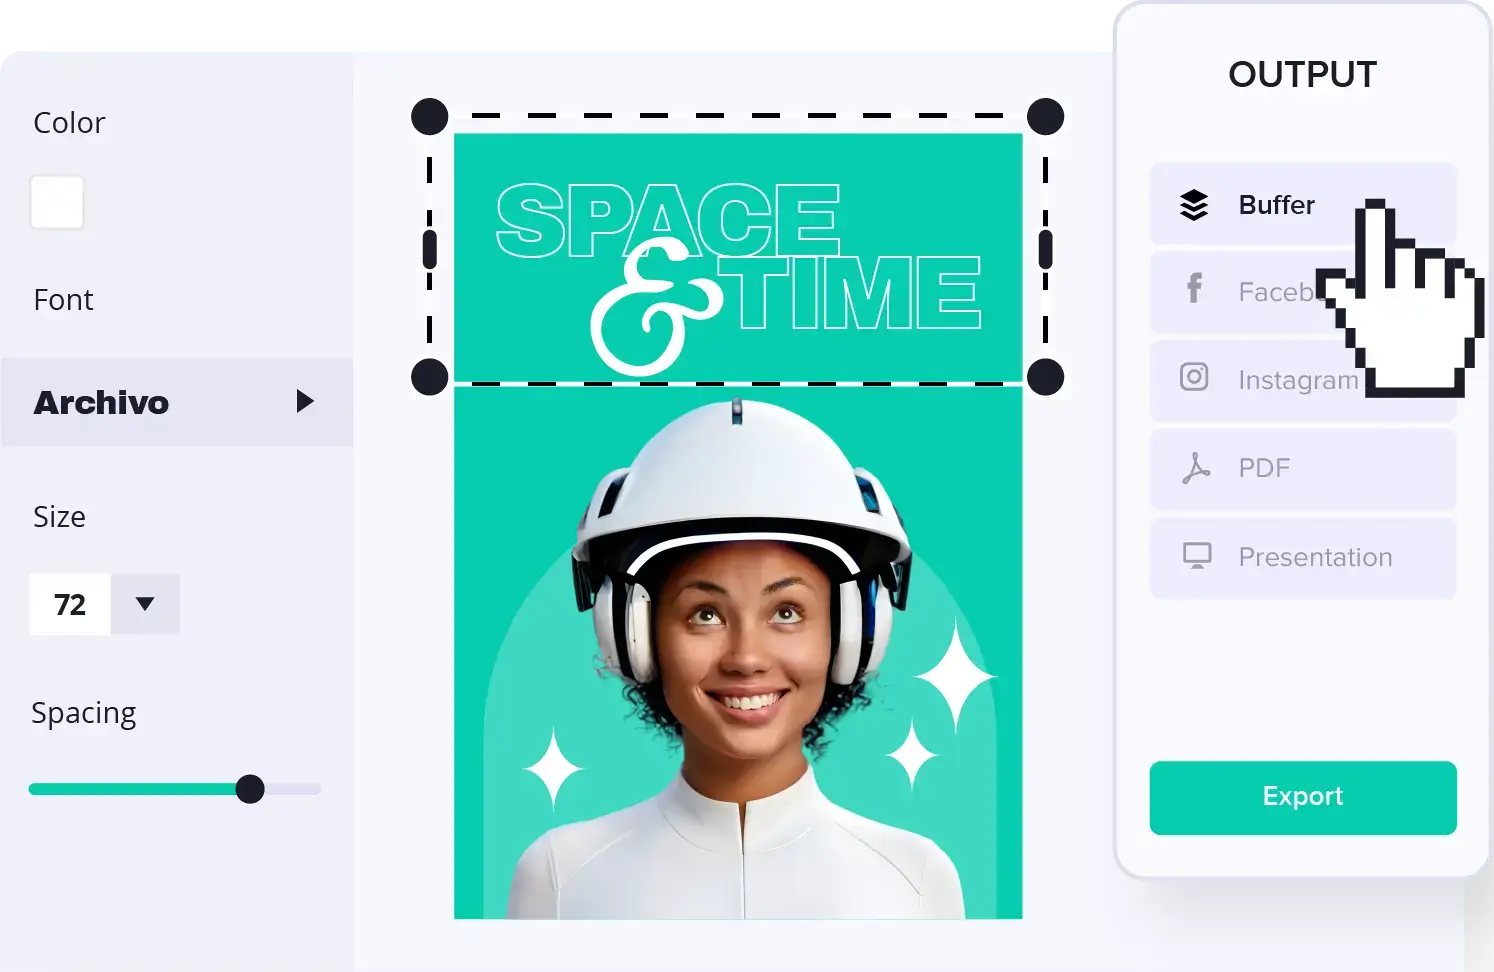 Interface graphique d'édition montrant une femme avec un casque futuriste et le texte "Space & Time" en arrière-plan.